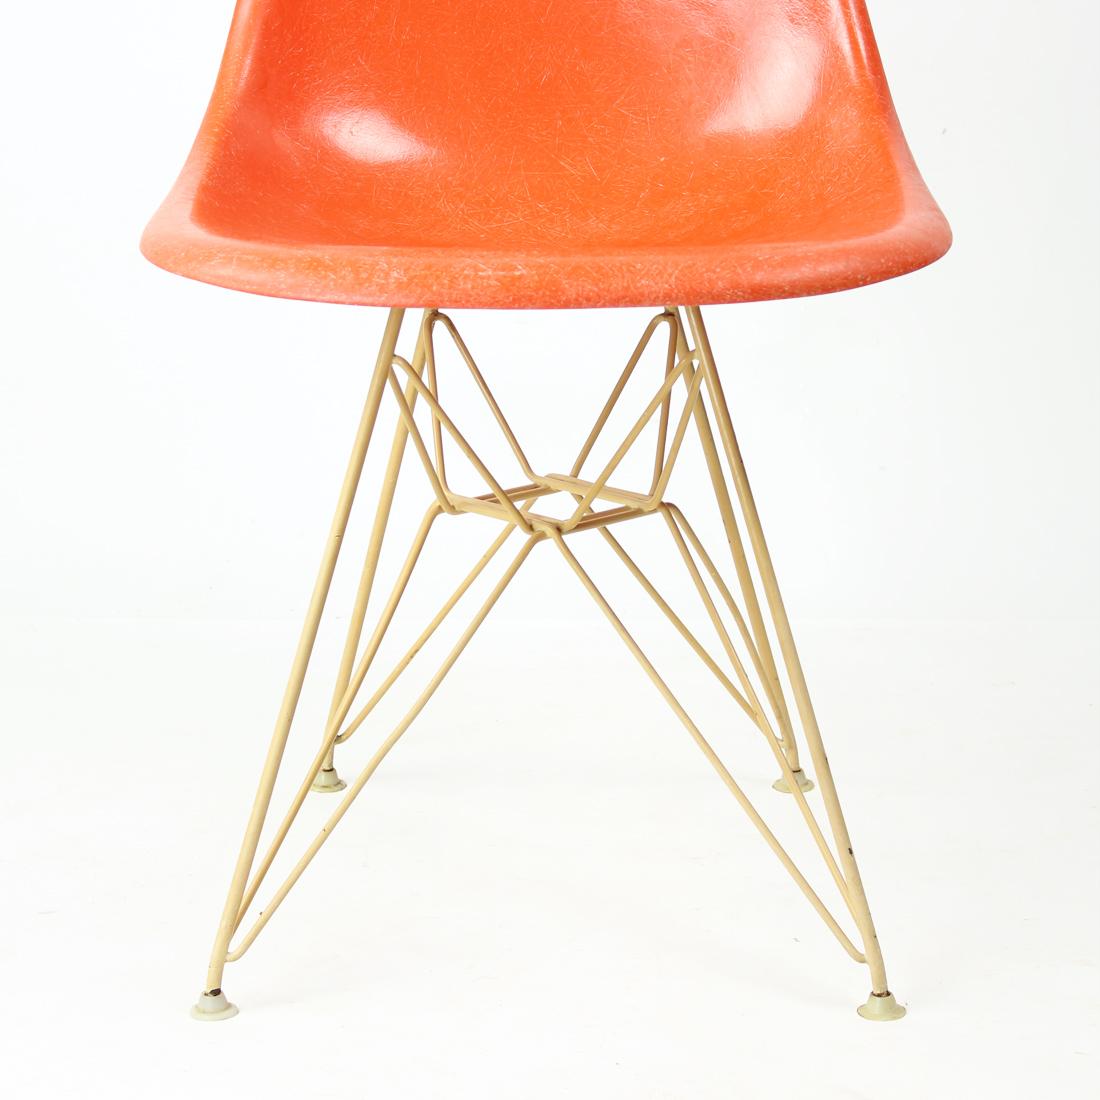 Originaler orangefarbener Fiberglas-Schalenstuhl aus den 1960er Jahren, entworfen von Charles und Ray Eames für Herman Miller. Die knappe candy orange Farbe hat seine ursprüngliche Oberfläche mit der deutlichen Fadenstruktur. Die Schale ist auf dem